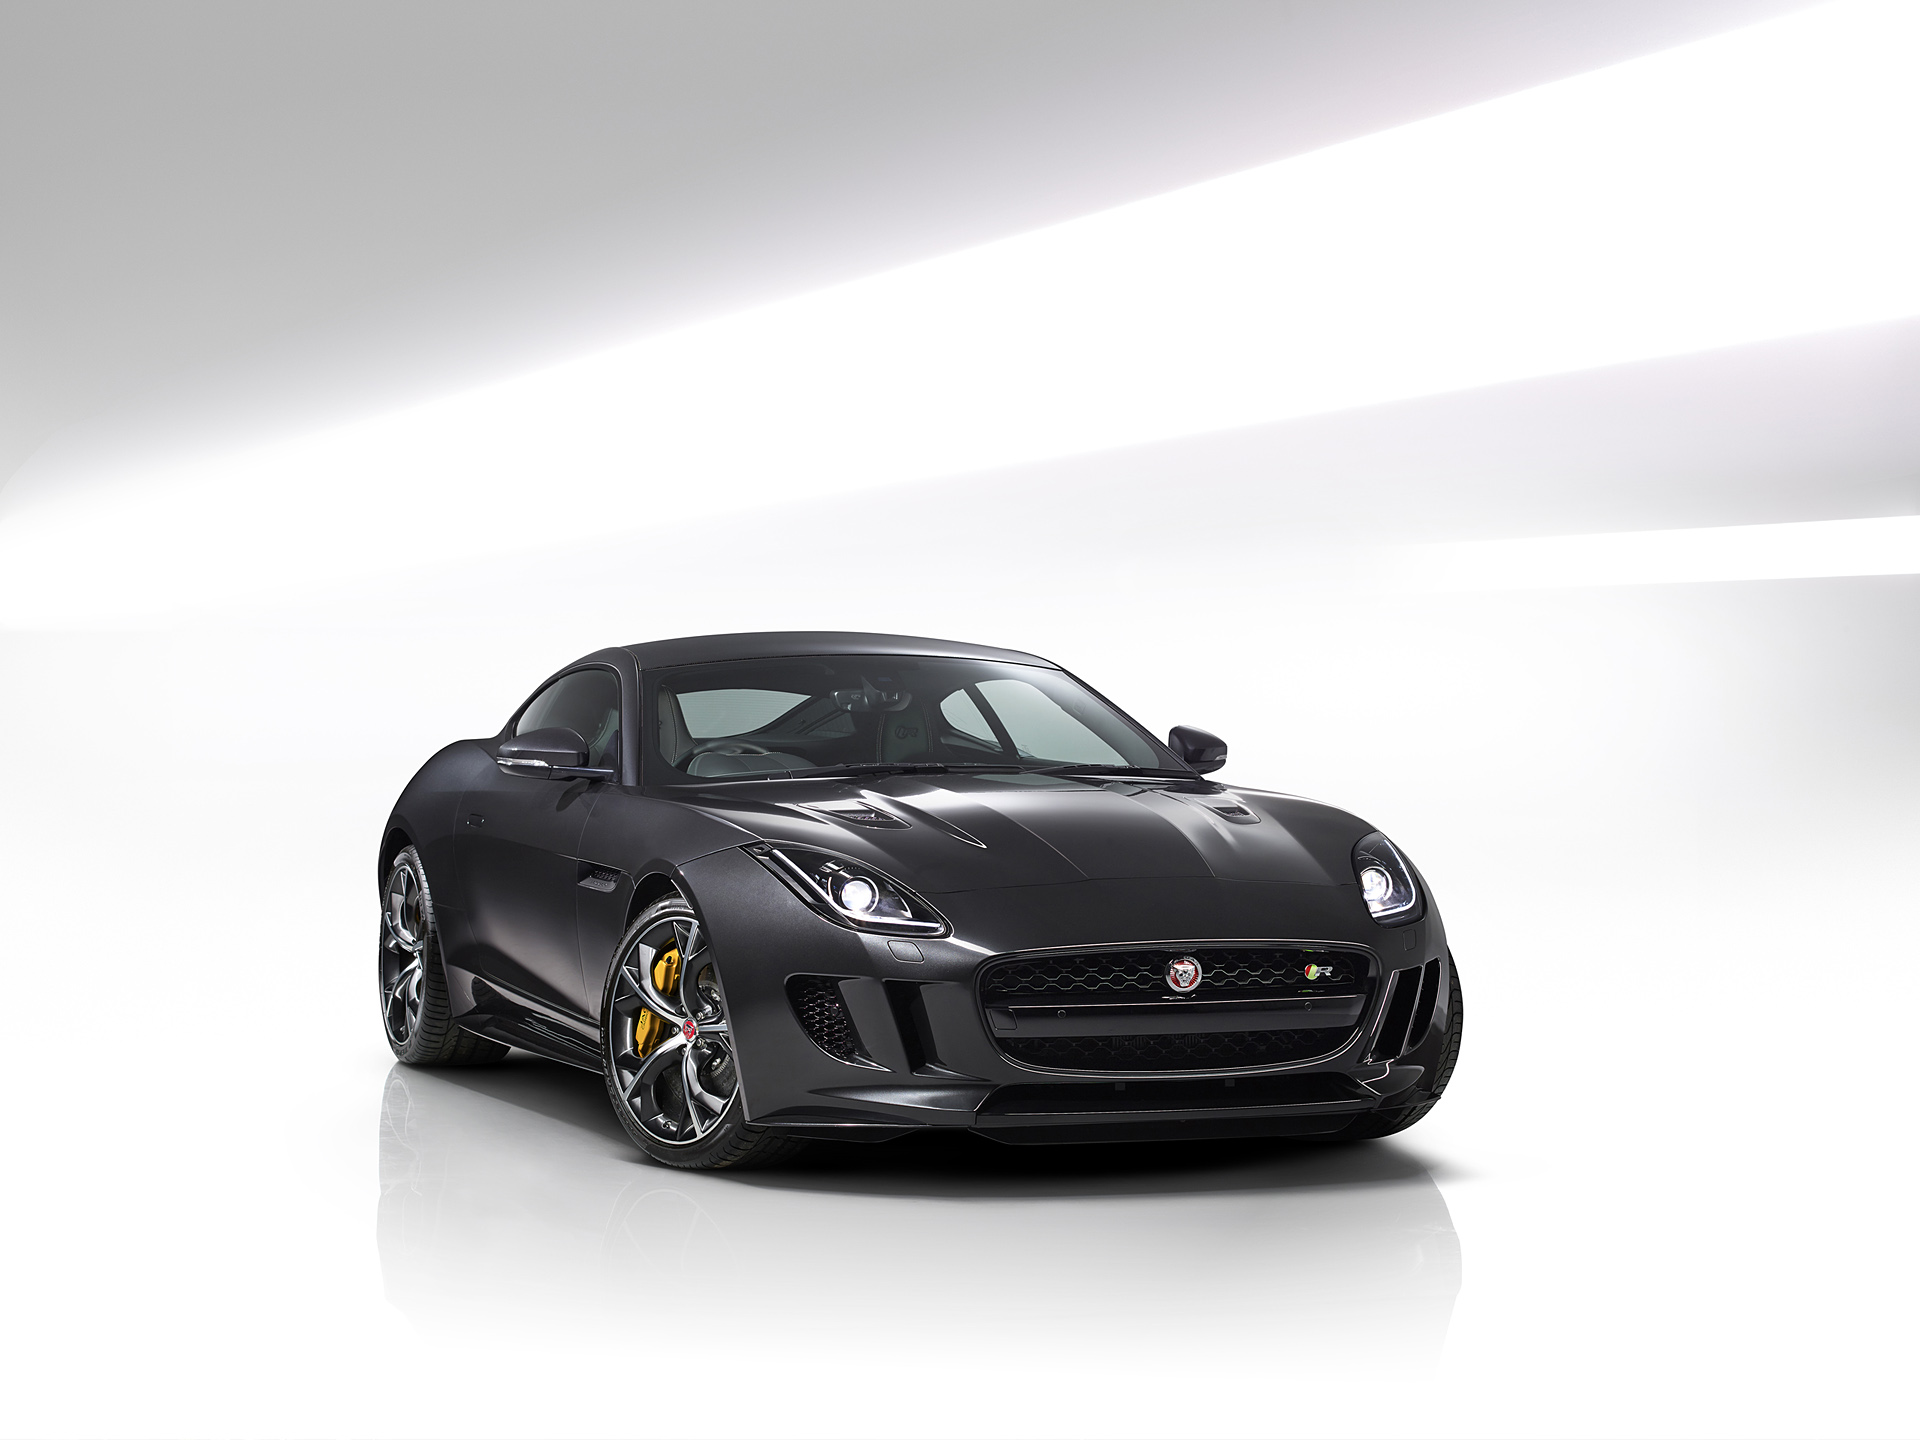  2016 Jaguar F-Type Wallpaper.